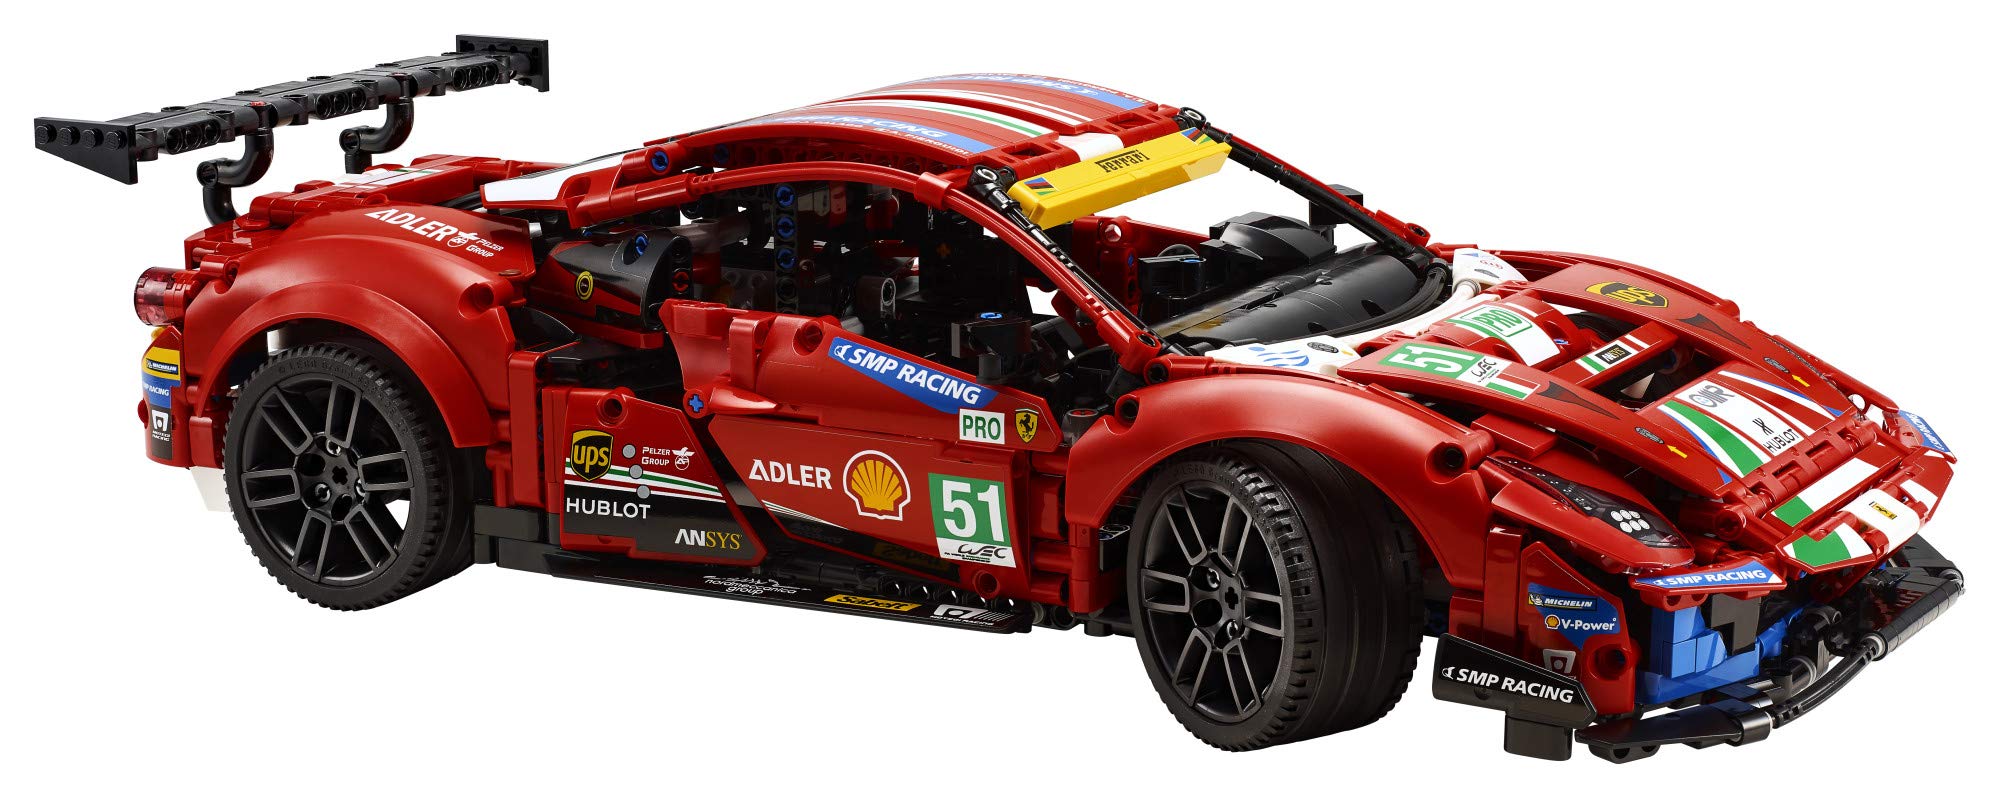 LEGO Technic Ferrari 488 GTE AF Corse #51 42125 Building Kit (1,677 Pieces)